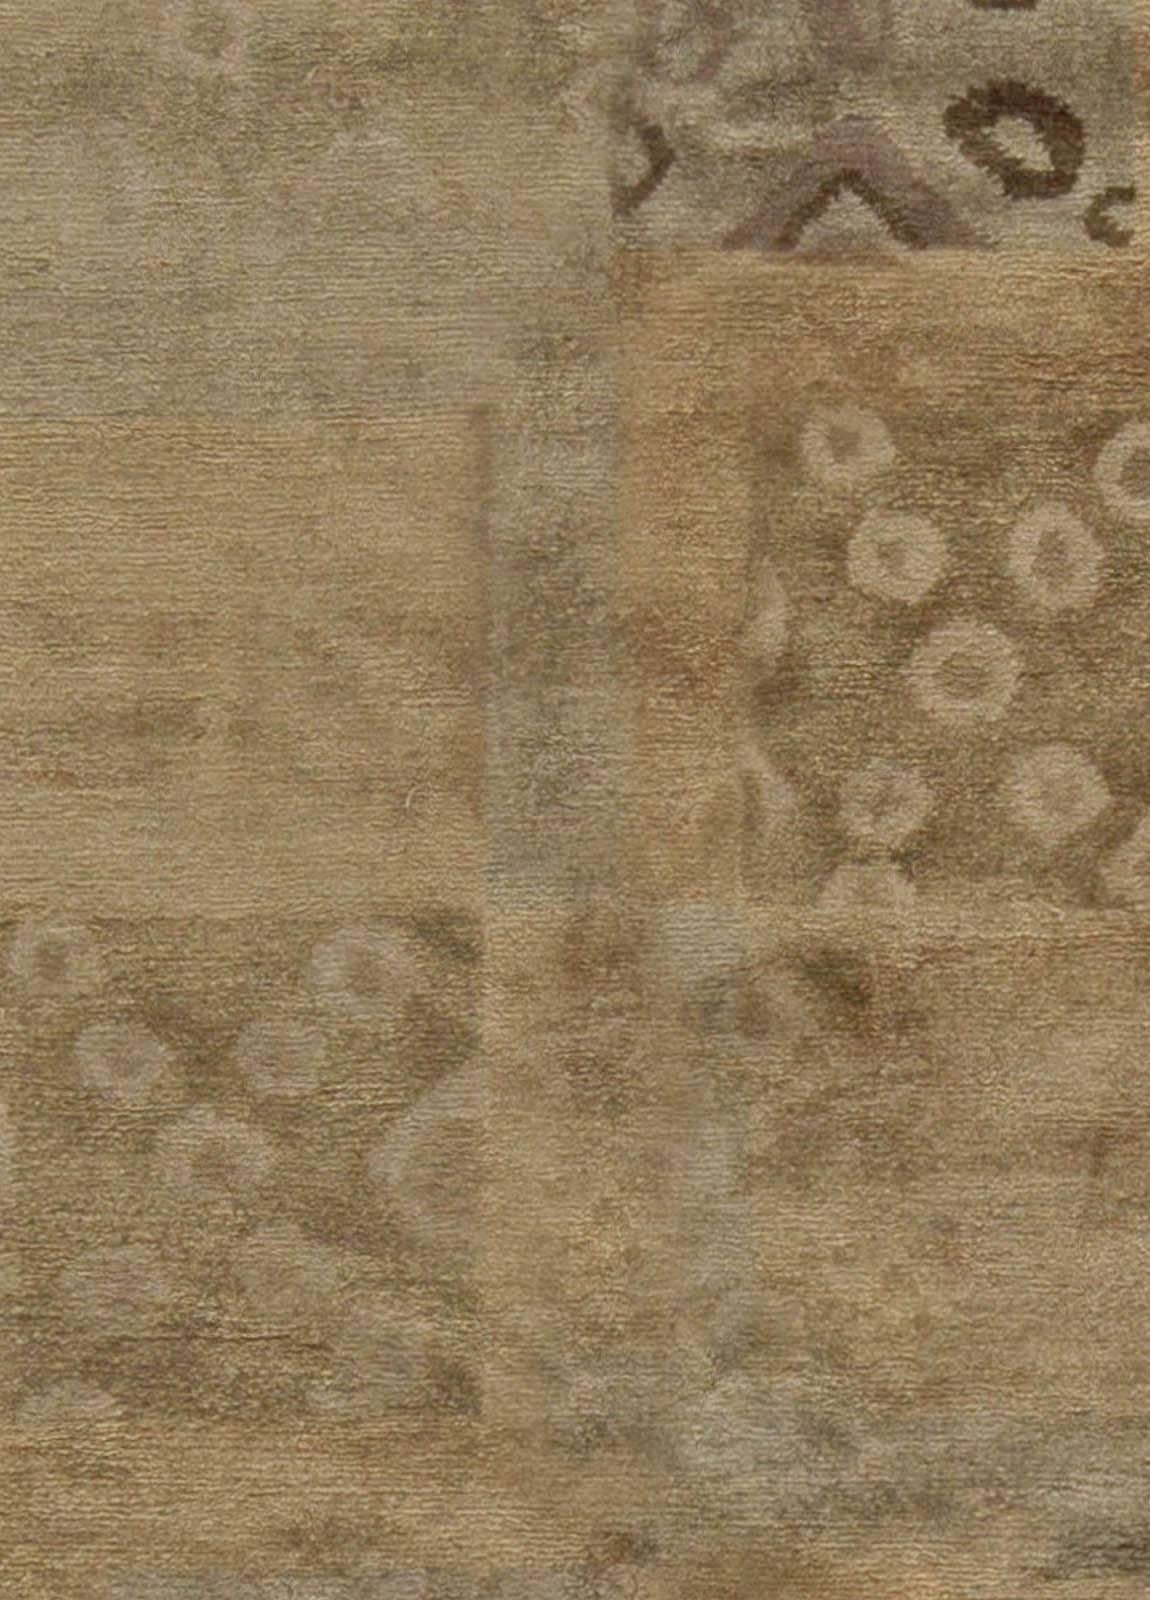 Modern Tibetan rug in brown and beige by Doris Leslie Blau.
Size: 6'0